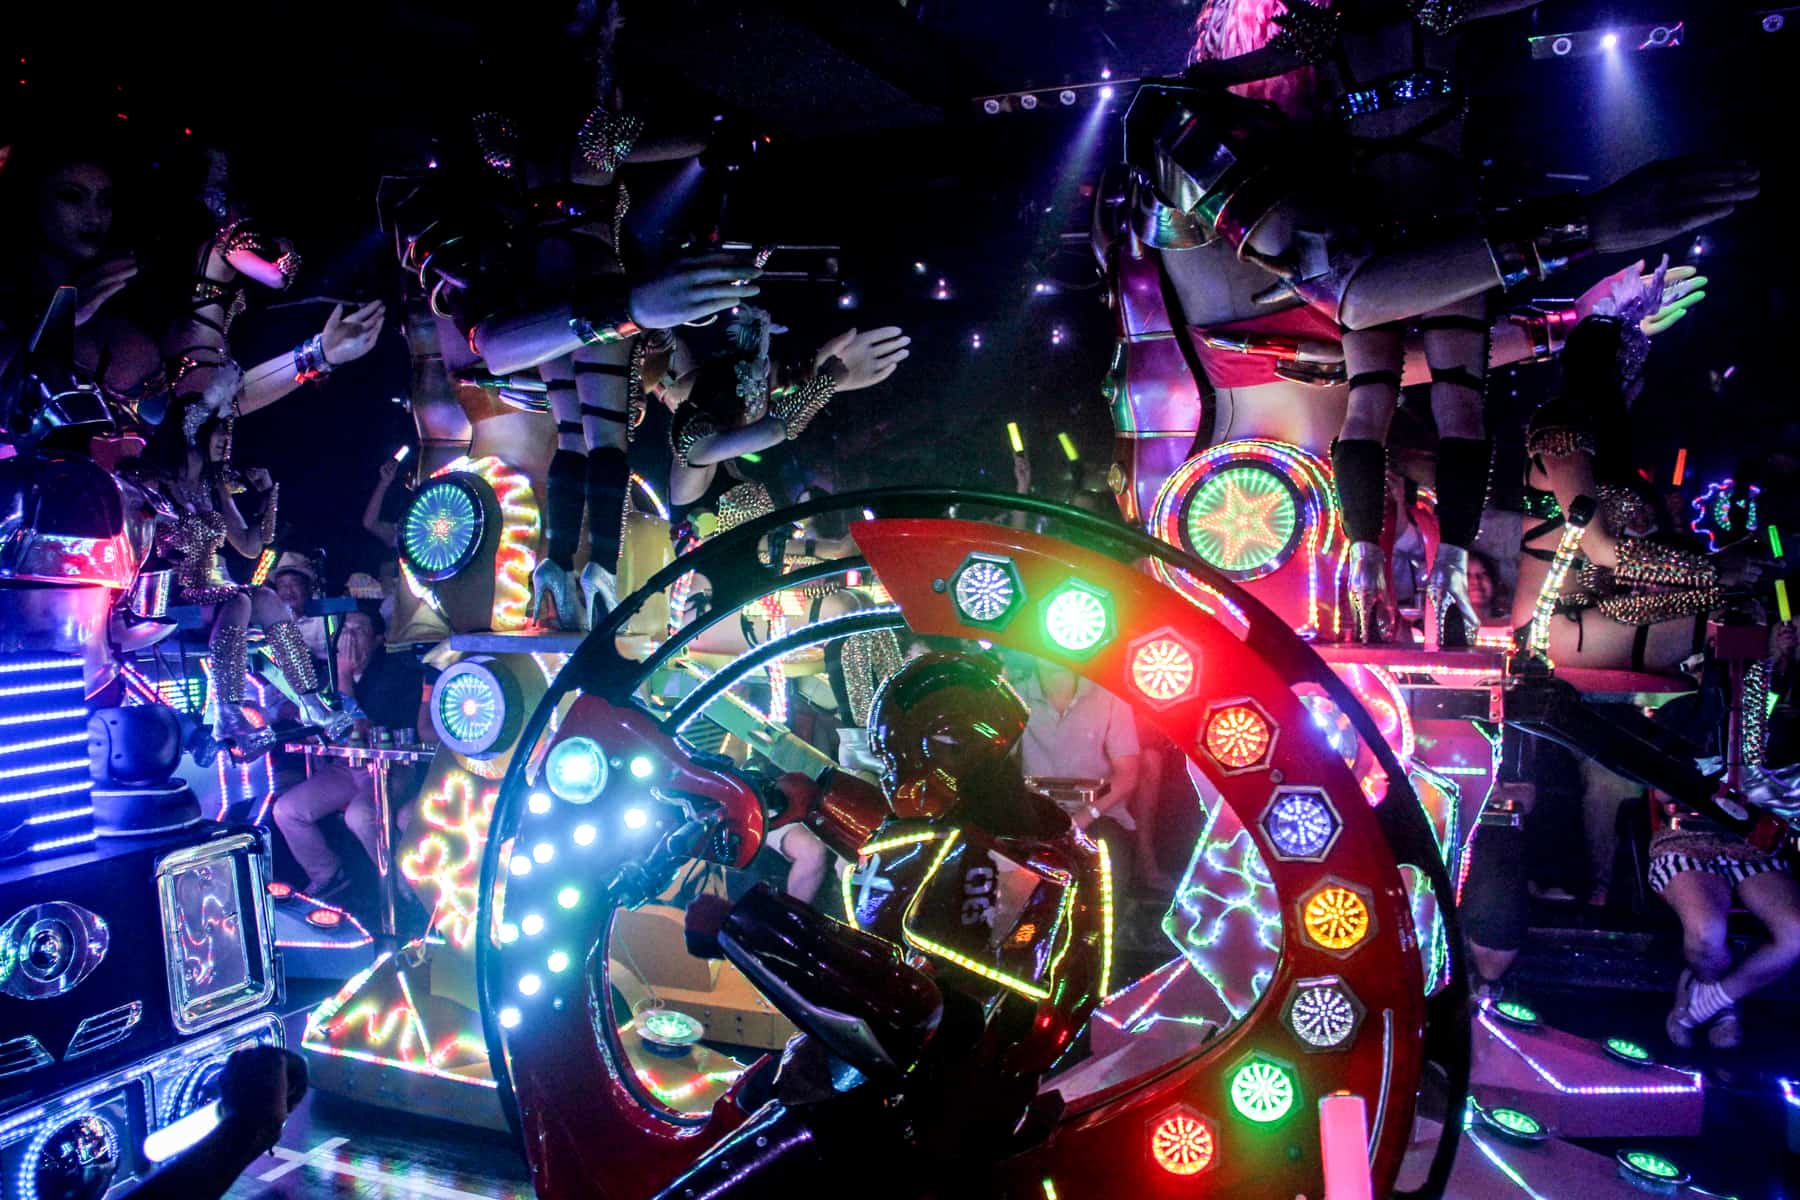 Raffinaderi Typisk røg The Robot Restaurant in Tokyo - The Most Bizarre Show Ever